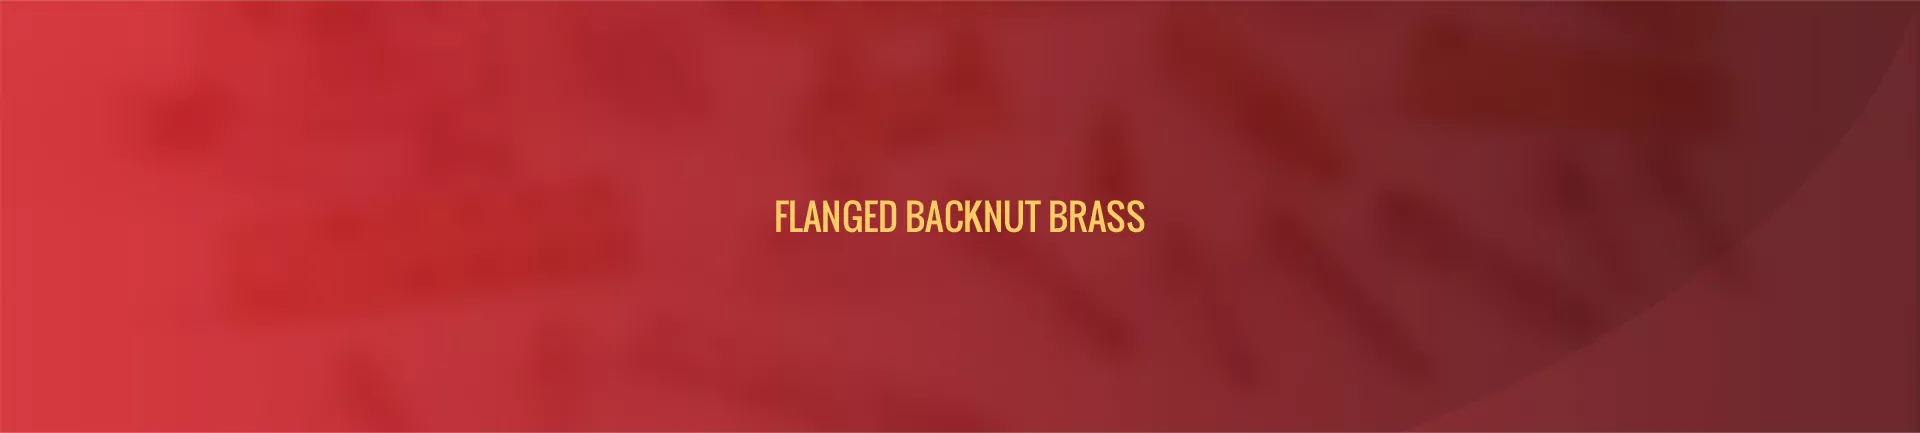 flanged_backnut_brass-banner